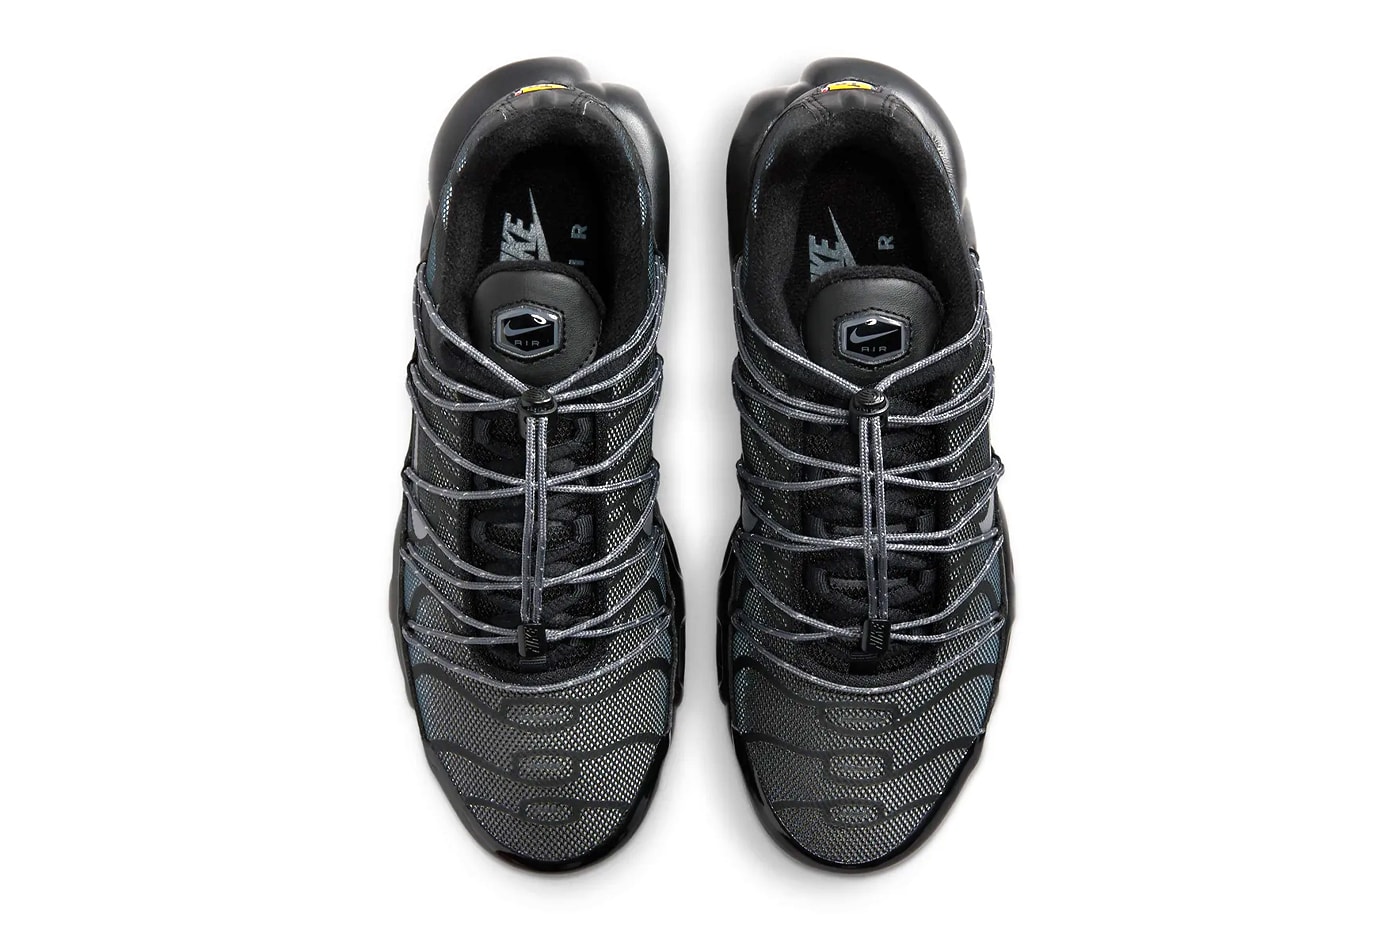 ナイキ エア マックス プラスからトグルレースを備えた新作 ブラック/メタリックシルバーが登場 Nike Air Max Plus Toggle Laces "Black/Metallic Silver" FZ2770-001 nike technical sneakers everyday swoosh